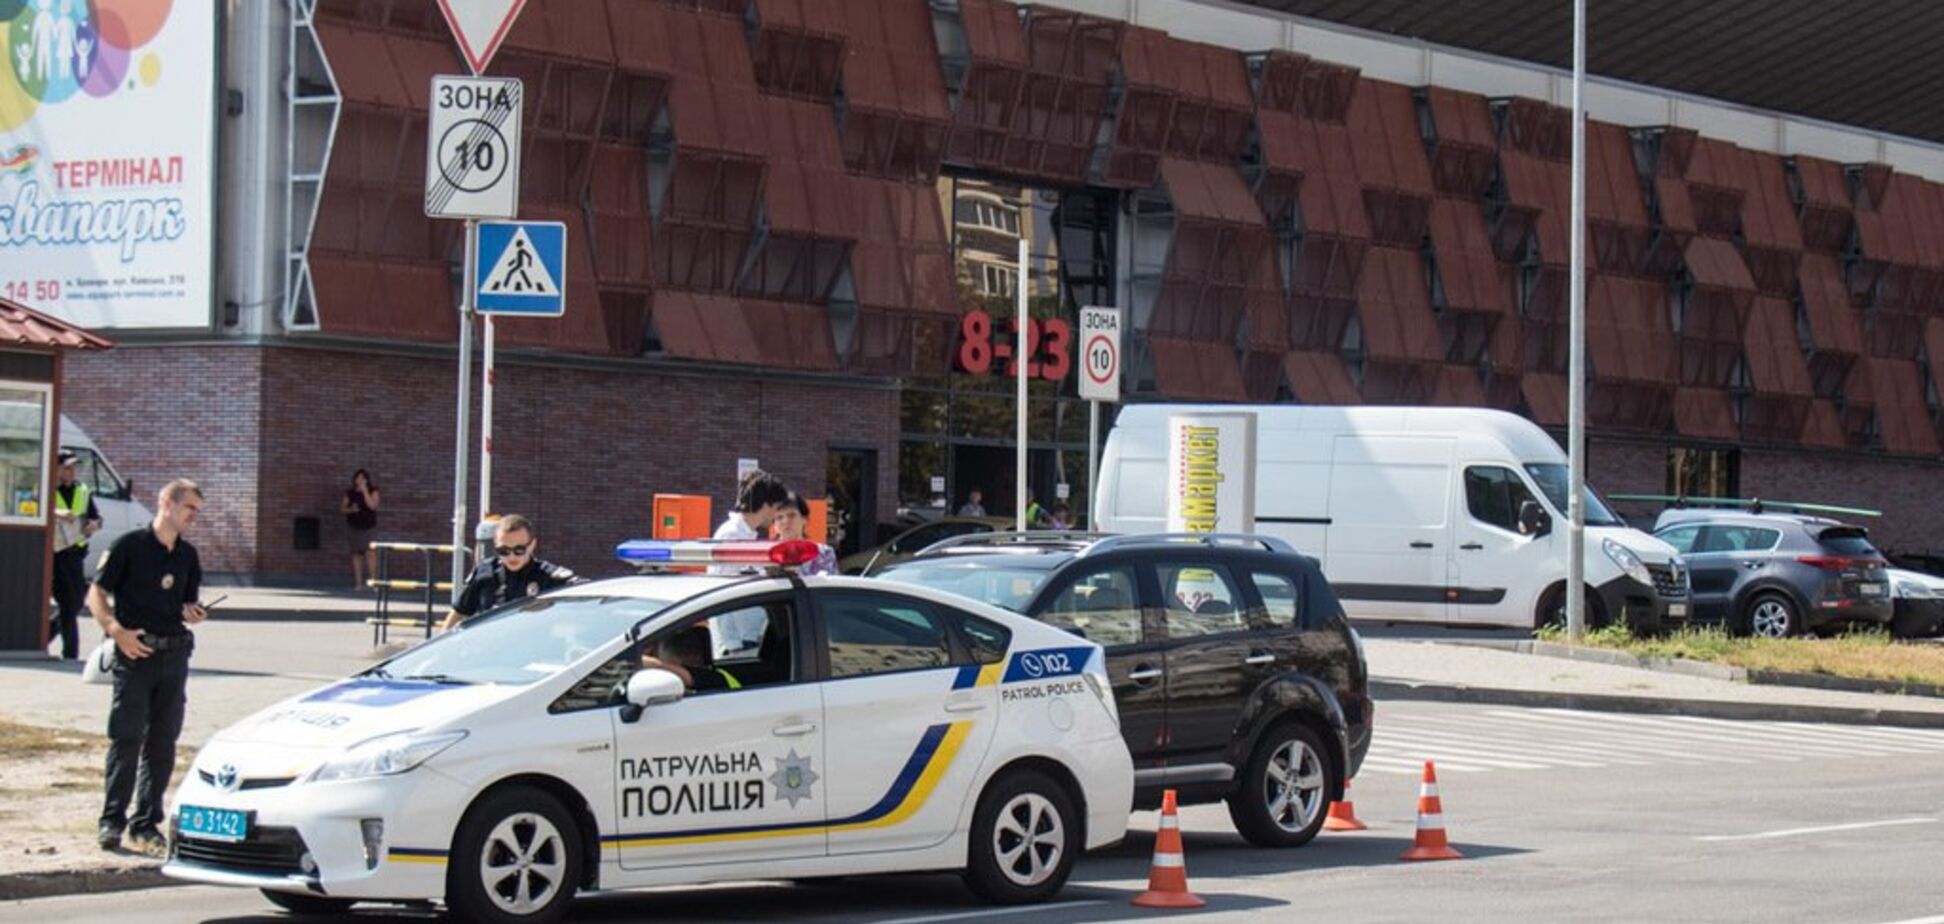 Мама сказала сбежать: в Киеве водитель устроил гонки с полицией. Фото и видео